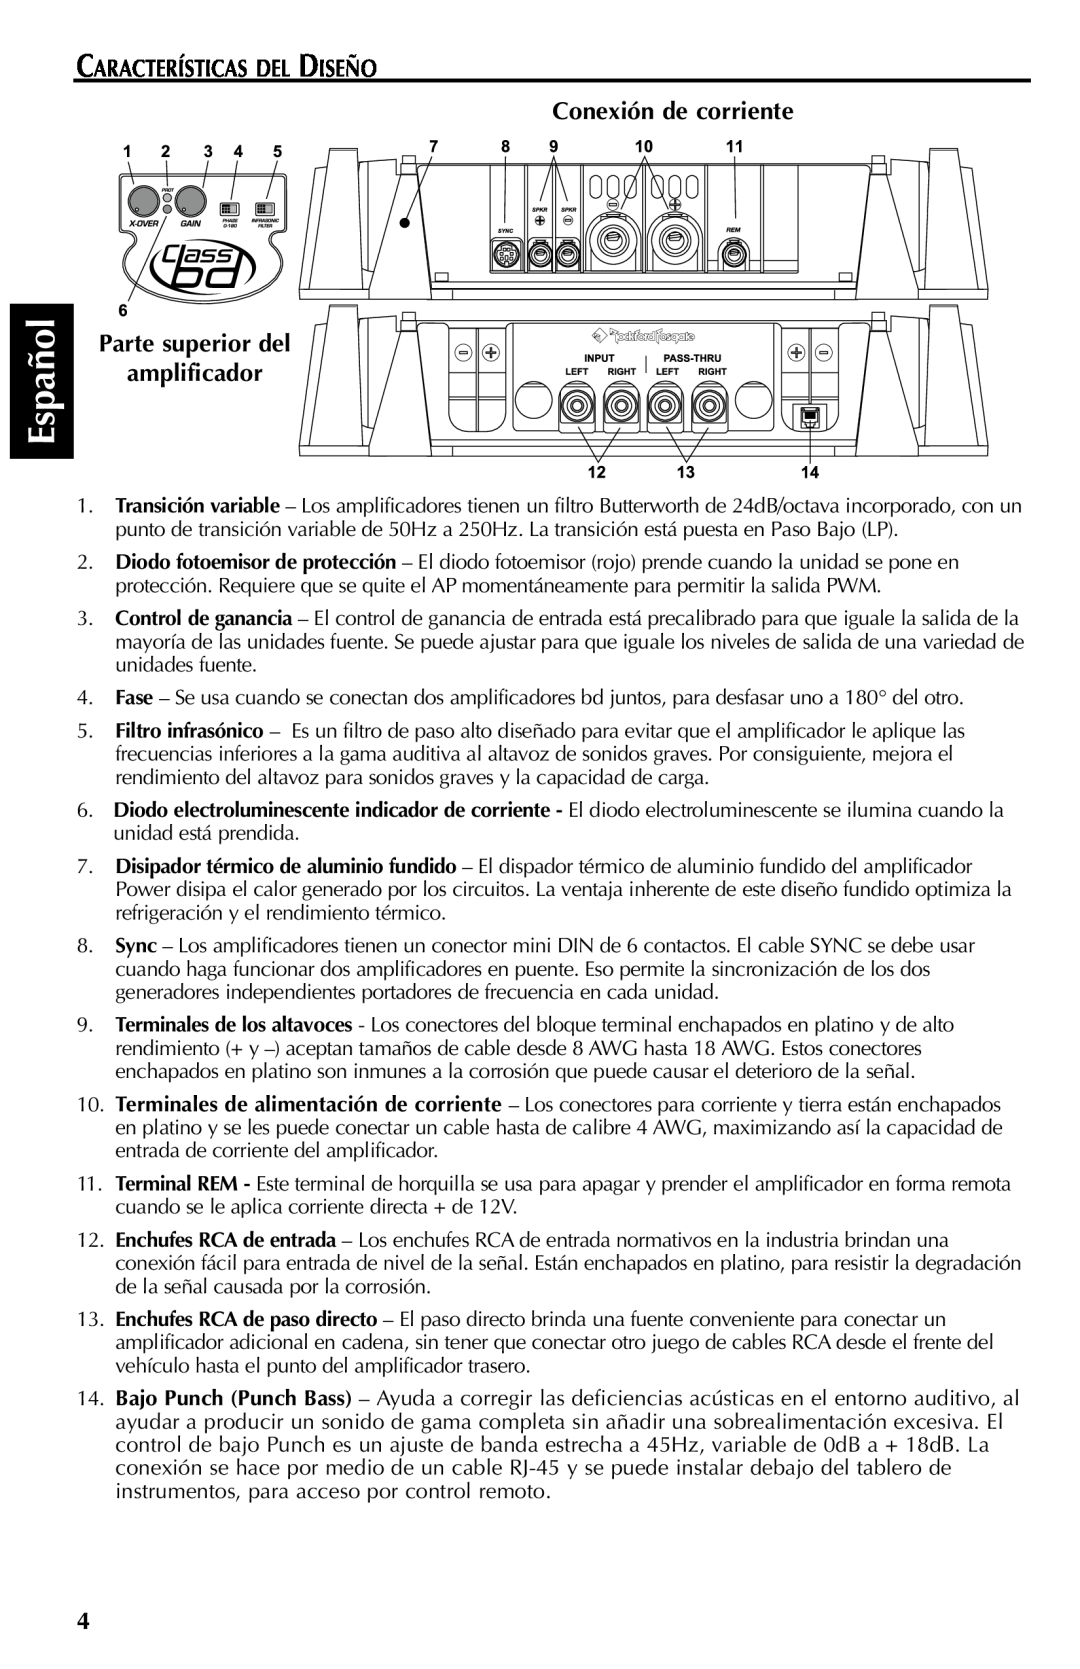 Rockford Fosgate FFX6 manual Español, CARACTERÍSTICAS DEL DISEÑO Conexión de corriente, Parte superior del amplificador 